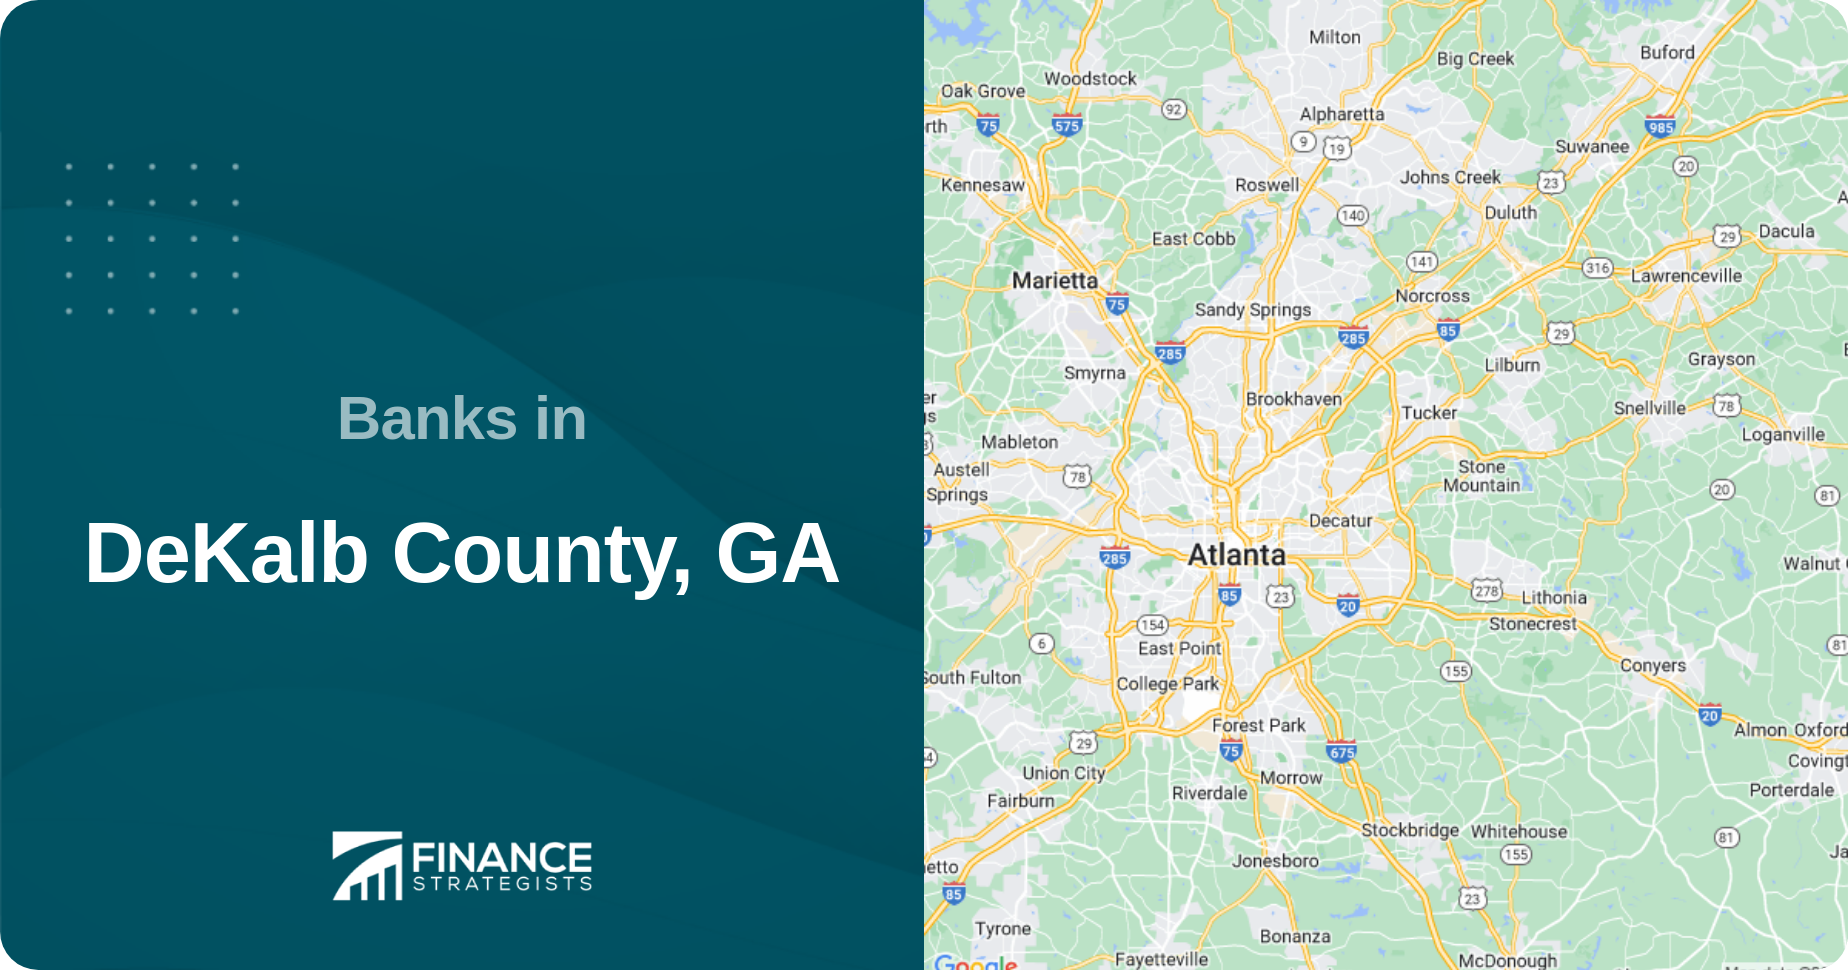 Banks in DeKalb County, GA